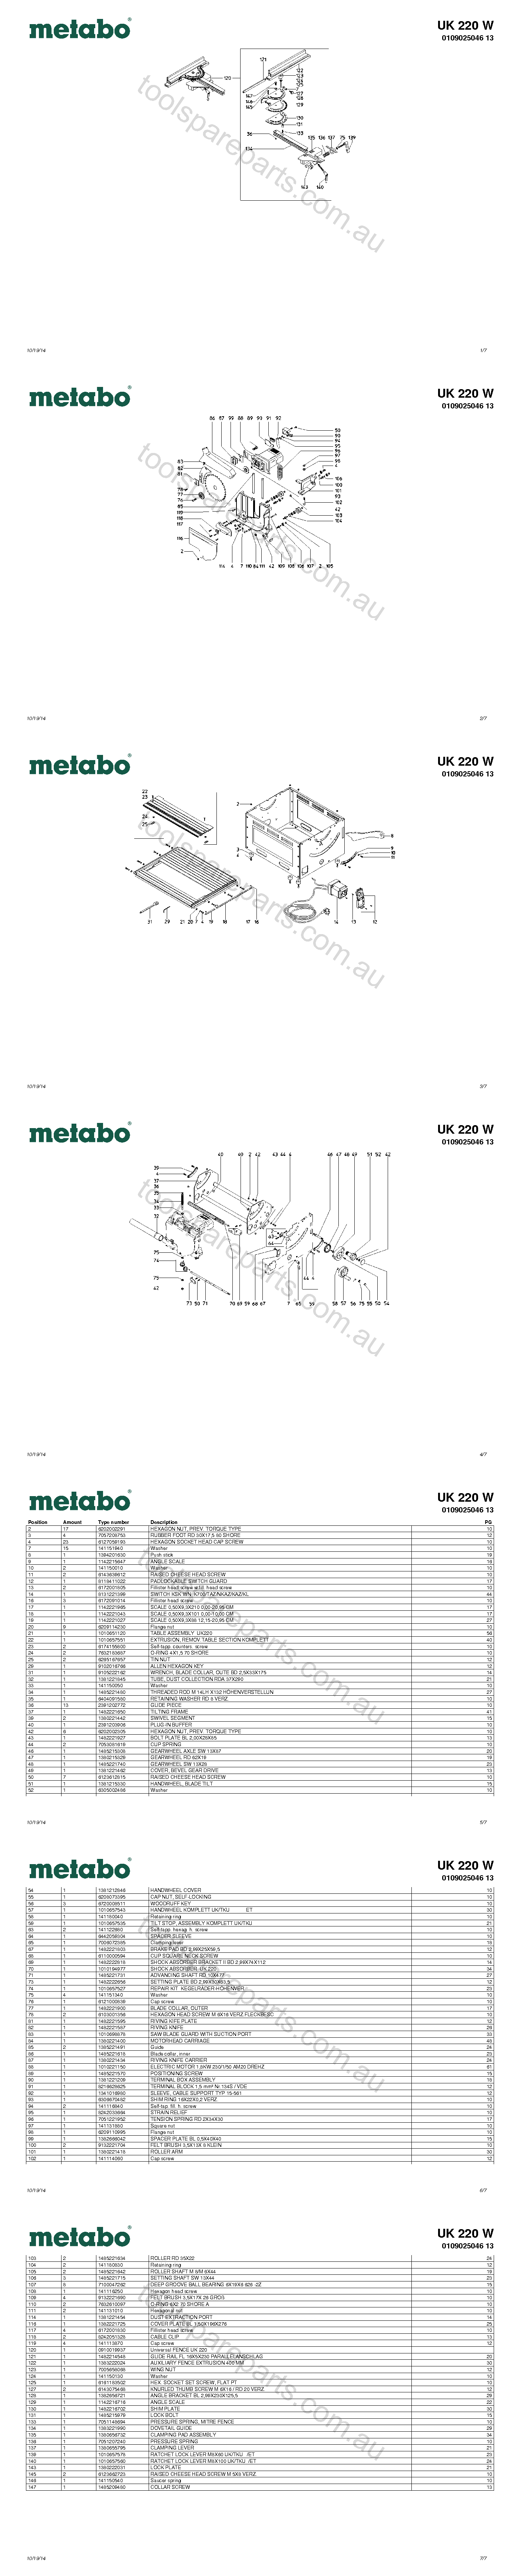 Metabo UK 220 W 0109025046 13  Diagram 1